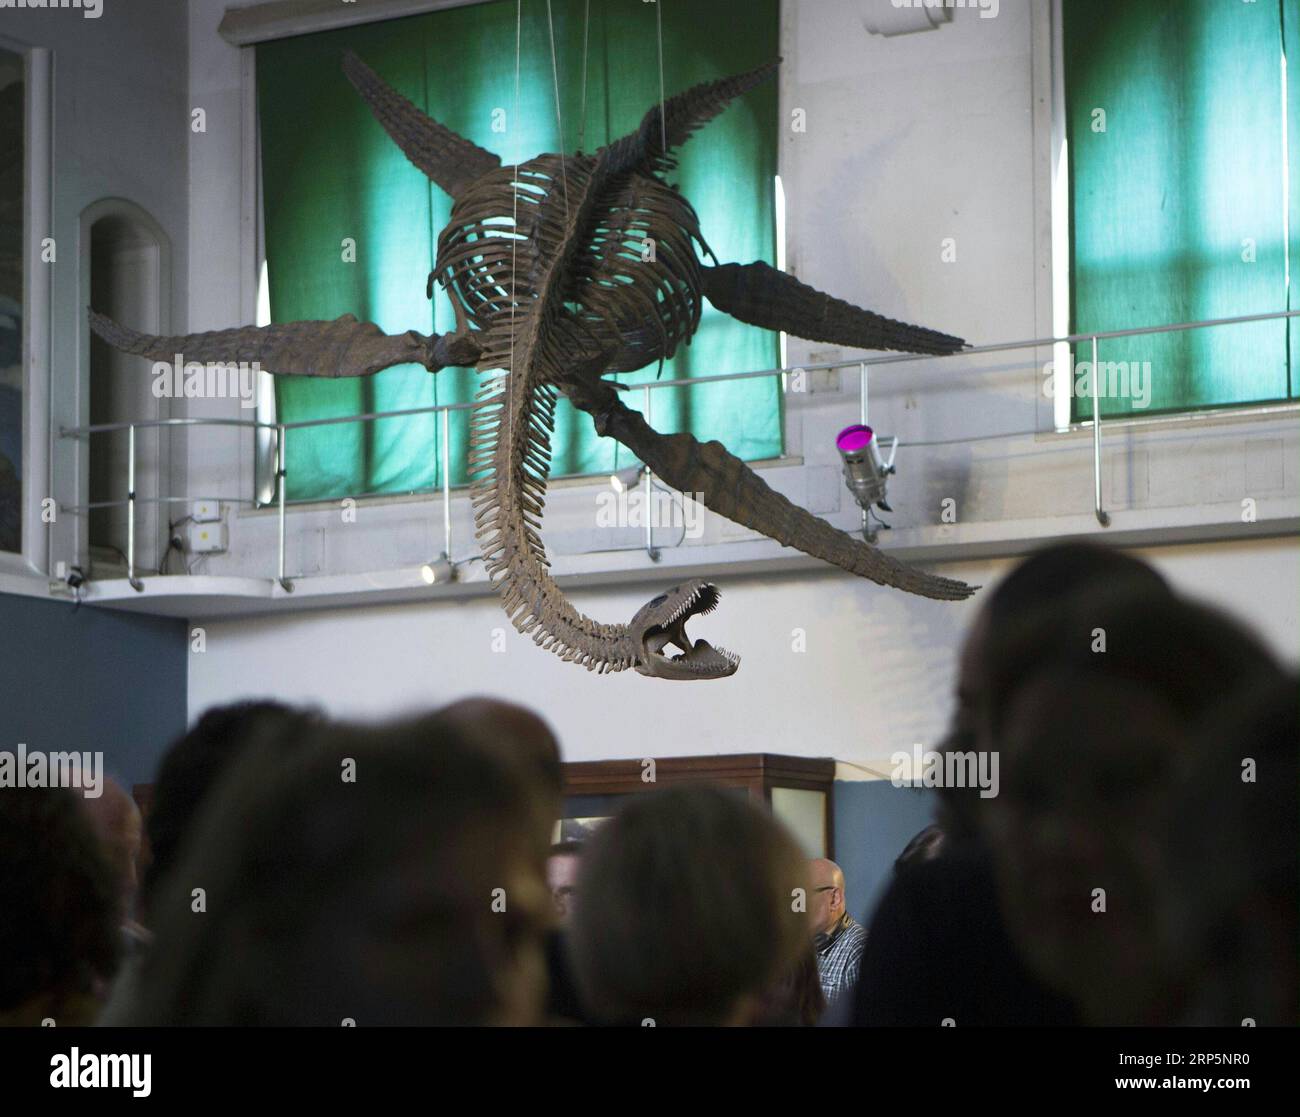 (181220) - PEKÍN, 20 de diciembre de 2018 -- Los visitantes admiran una réplica de un esqueleto de un reptil marino de plesiosaurio de 65 millones de años de antigüedad en el Museo de Ciencias Naturales Bernardino Rivadavia en Buenos Aires, Argentina, el 19 de diciembre de 2018. El fósil fue encontrado en rocas del período Cretácico sumergidas en el Lago Argentino al pie de la cordillera de los Andes. El fósil tiene nueve metros de largo con cada aleta de 1,3 metros.) XINHUA FOTOS DEL DÍA XINHUA FOTOS DEL DÍA MARTINXZABALA PUBLICATIONXNOTXINXCHN Foto de stock